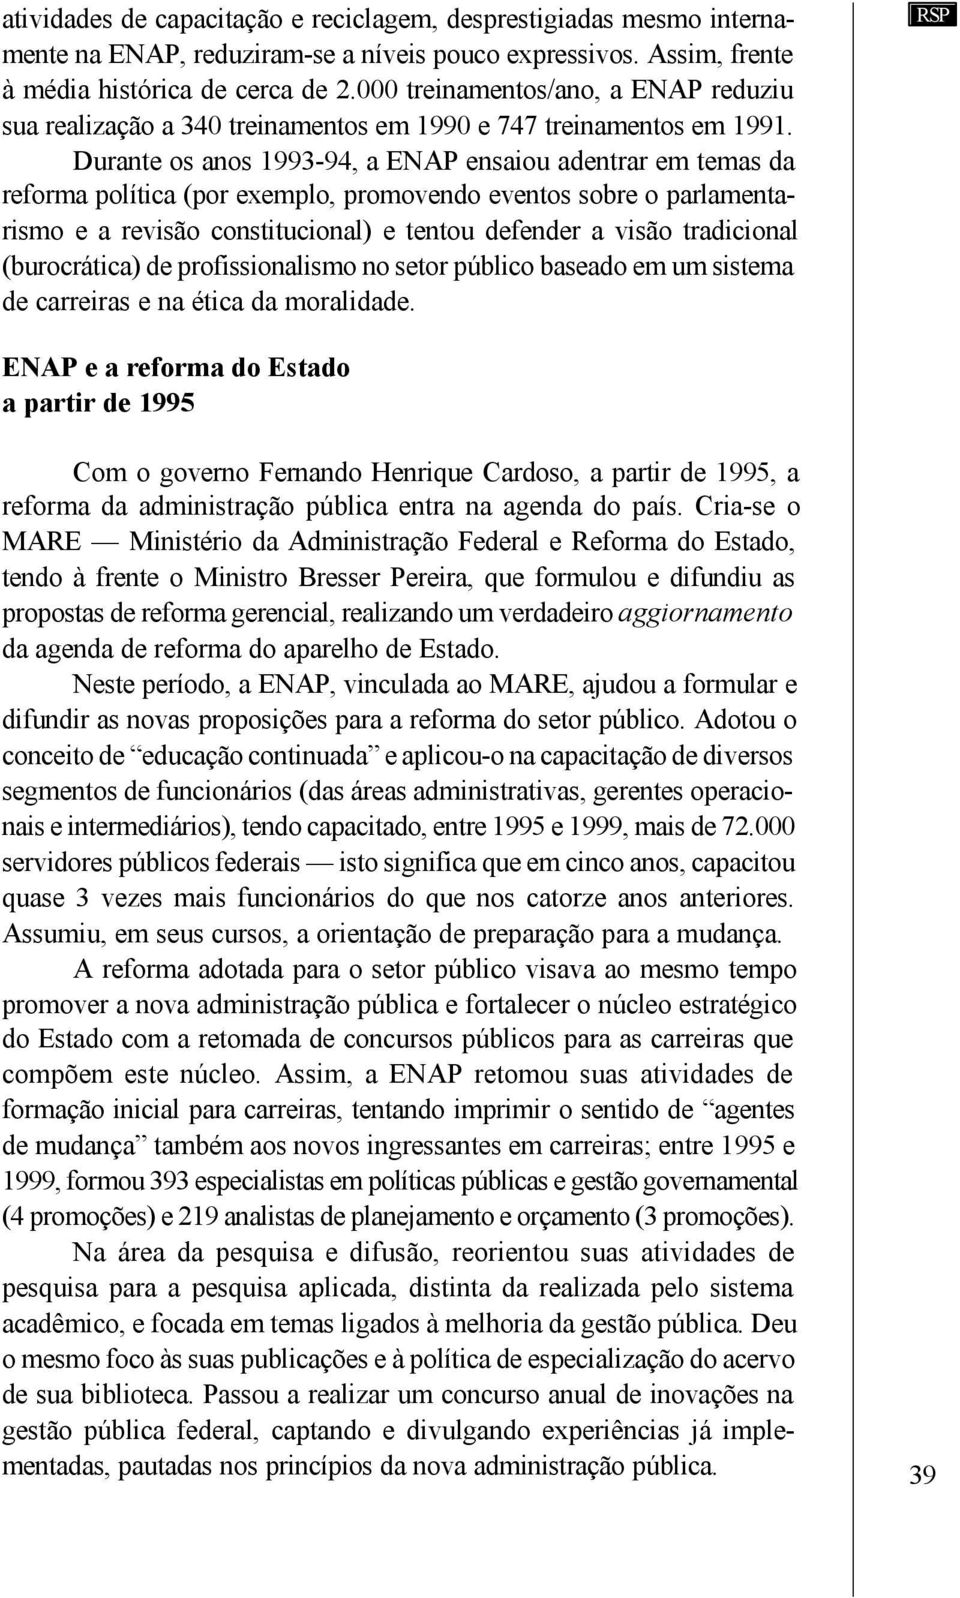 Durante os anos 1993-94, a ENAP ensaiou adentrar em temas da reforma política (por exemplo, promovendo eventos sobre o parlamentarismo e a revisão constitucional) e tentou defender a visão